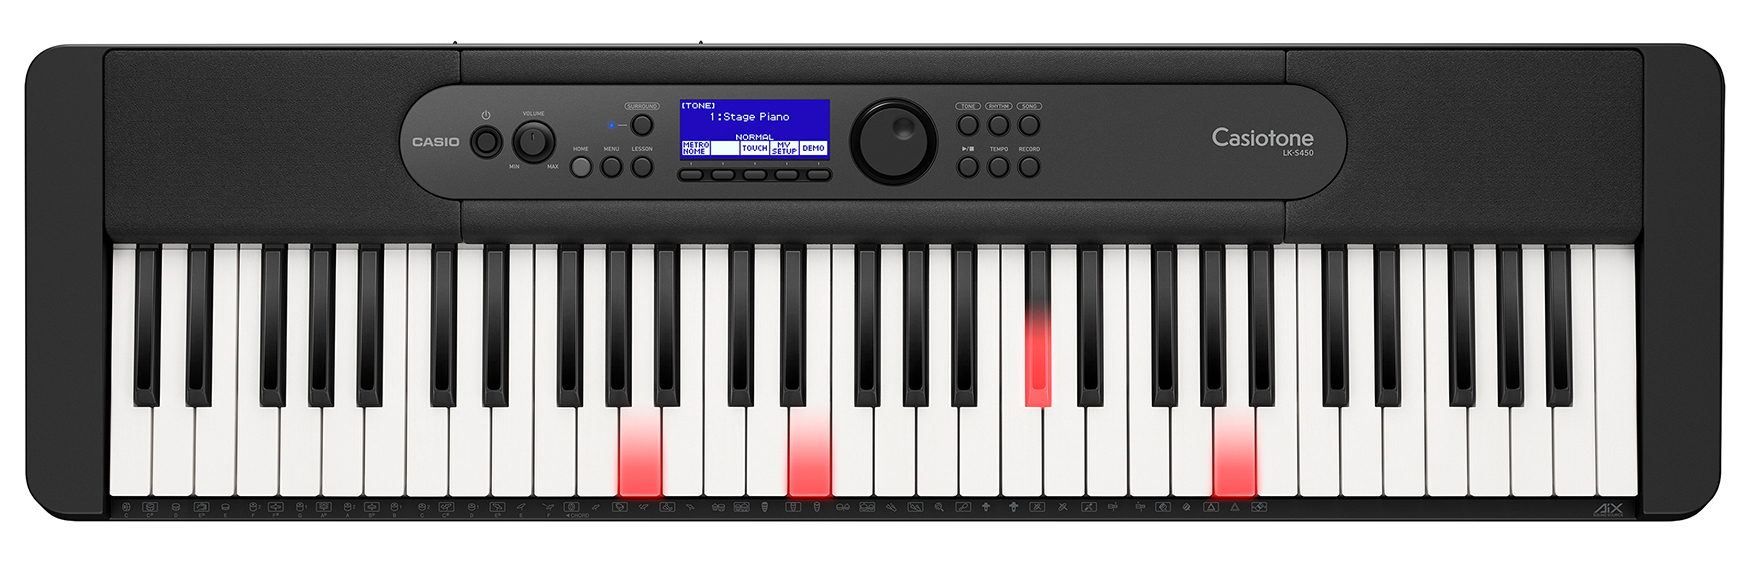 Billede af Casio LK-S450 Keyboard med lys i tangenterne hos Music2you